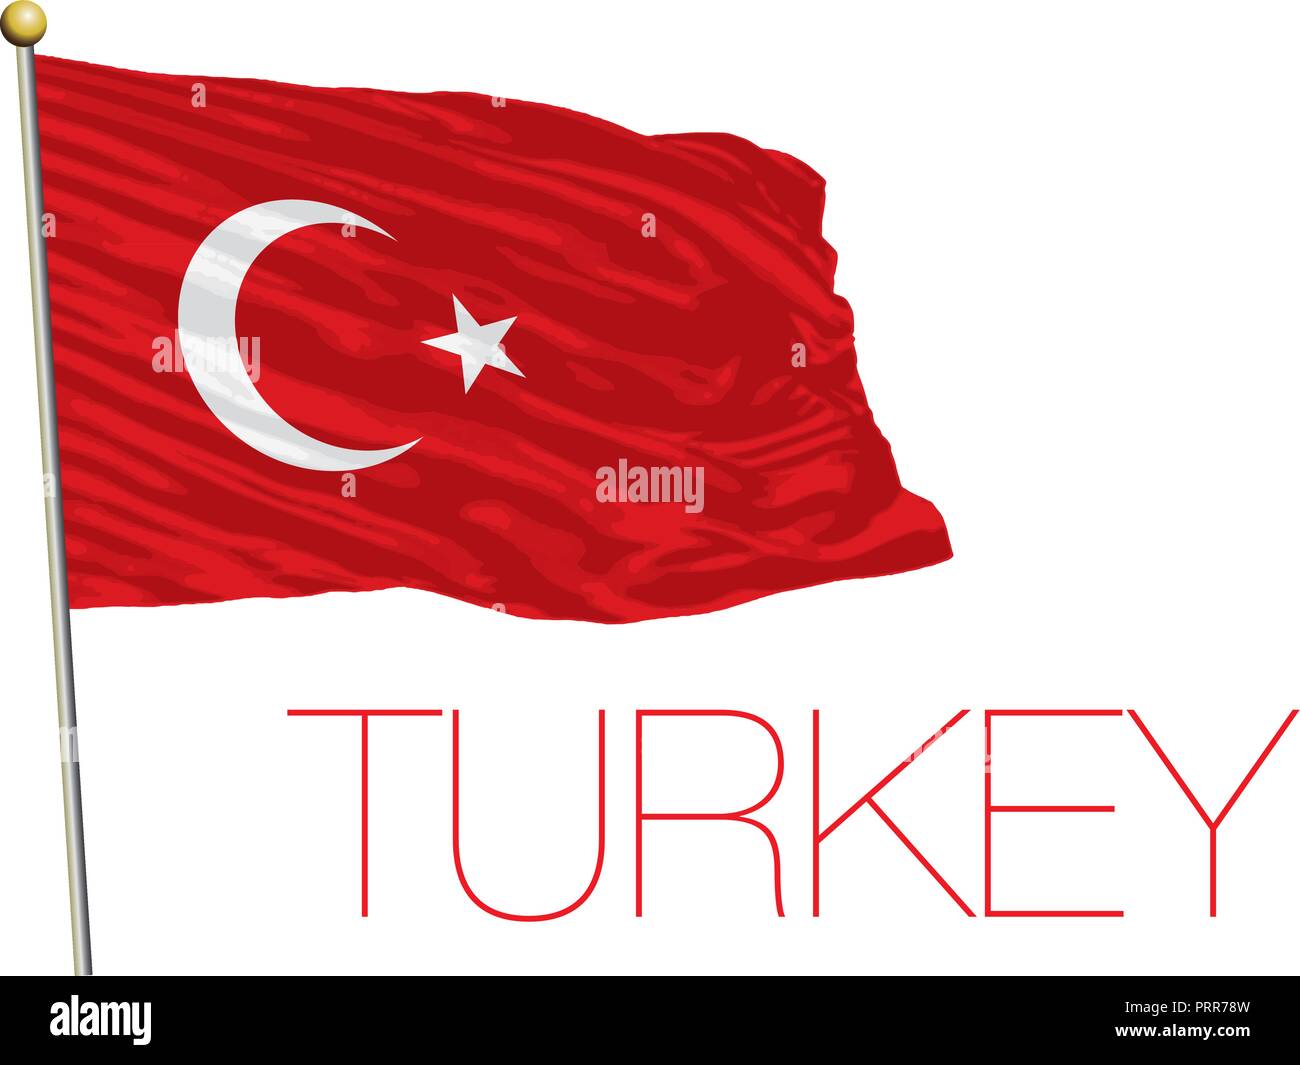 Turkey official flag, vector illustration Stock Vector